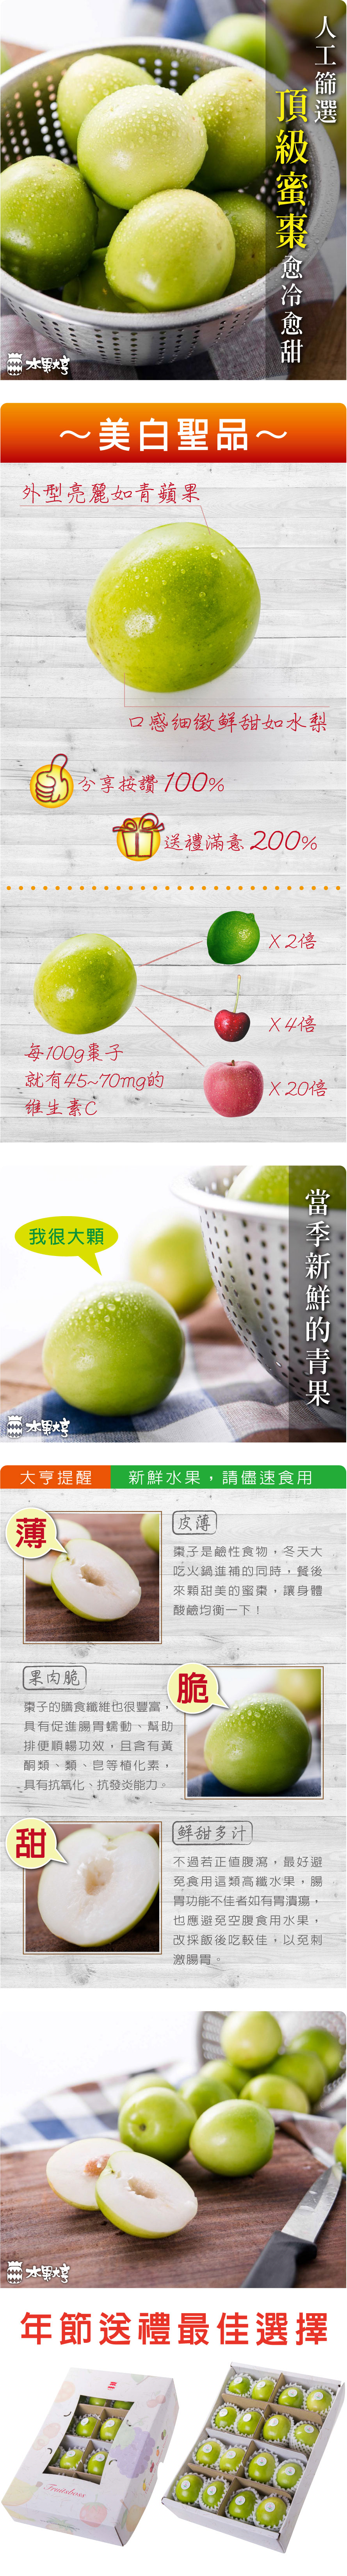 水果大亨 台灣翡翠綠蜜棗禮盒(頂級雪蜜)